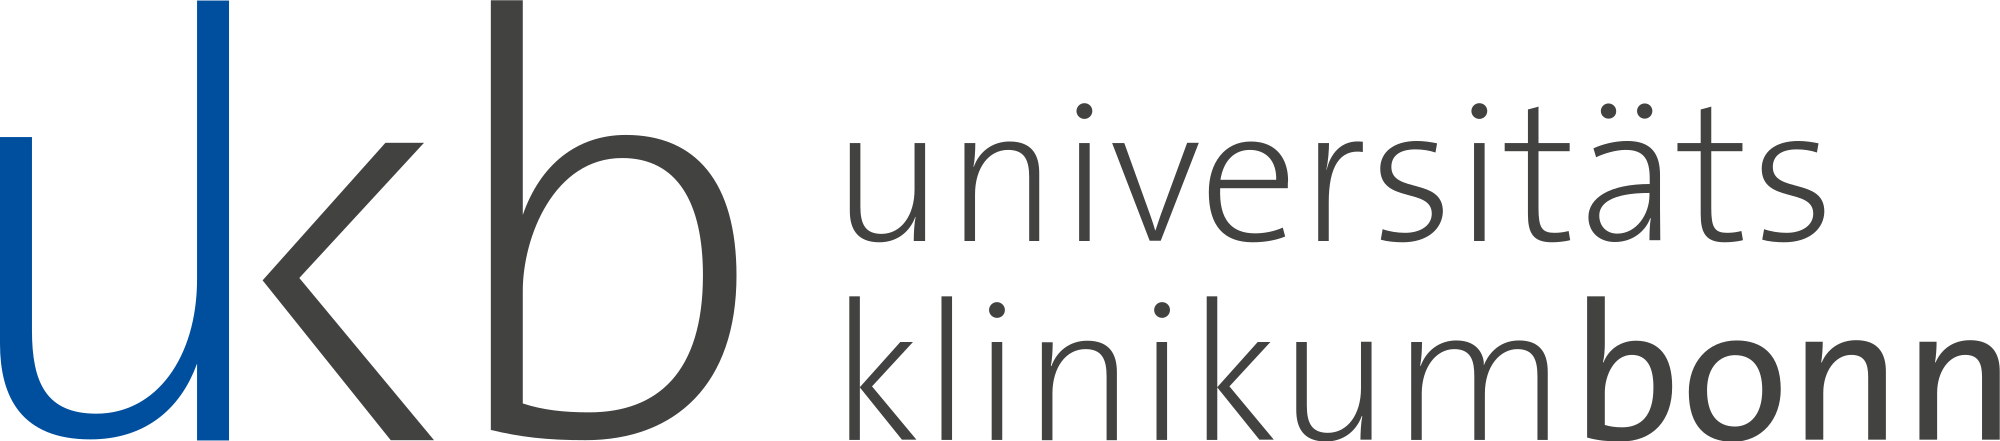 Ukb logo